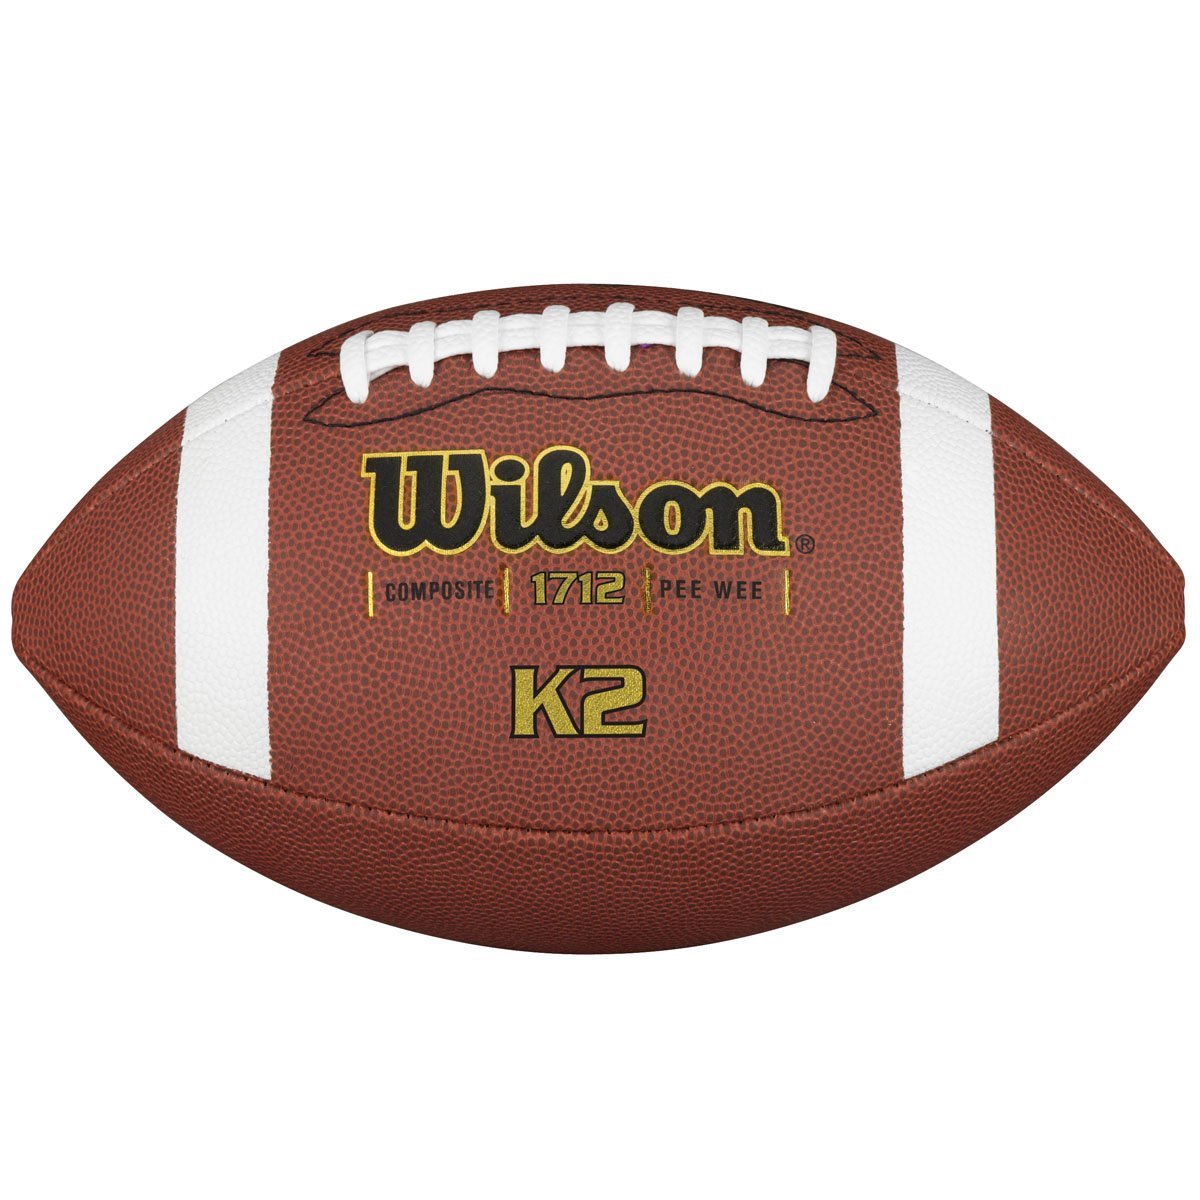 Balón de Football K2 Wilson